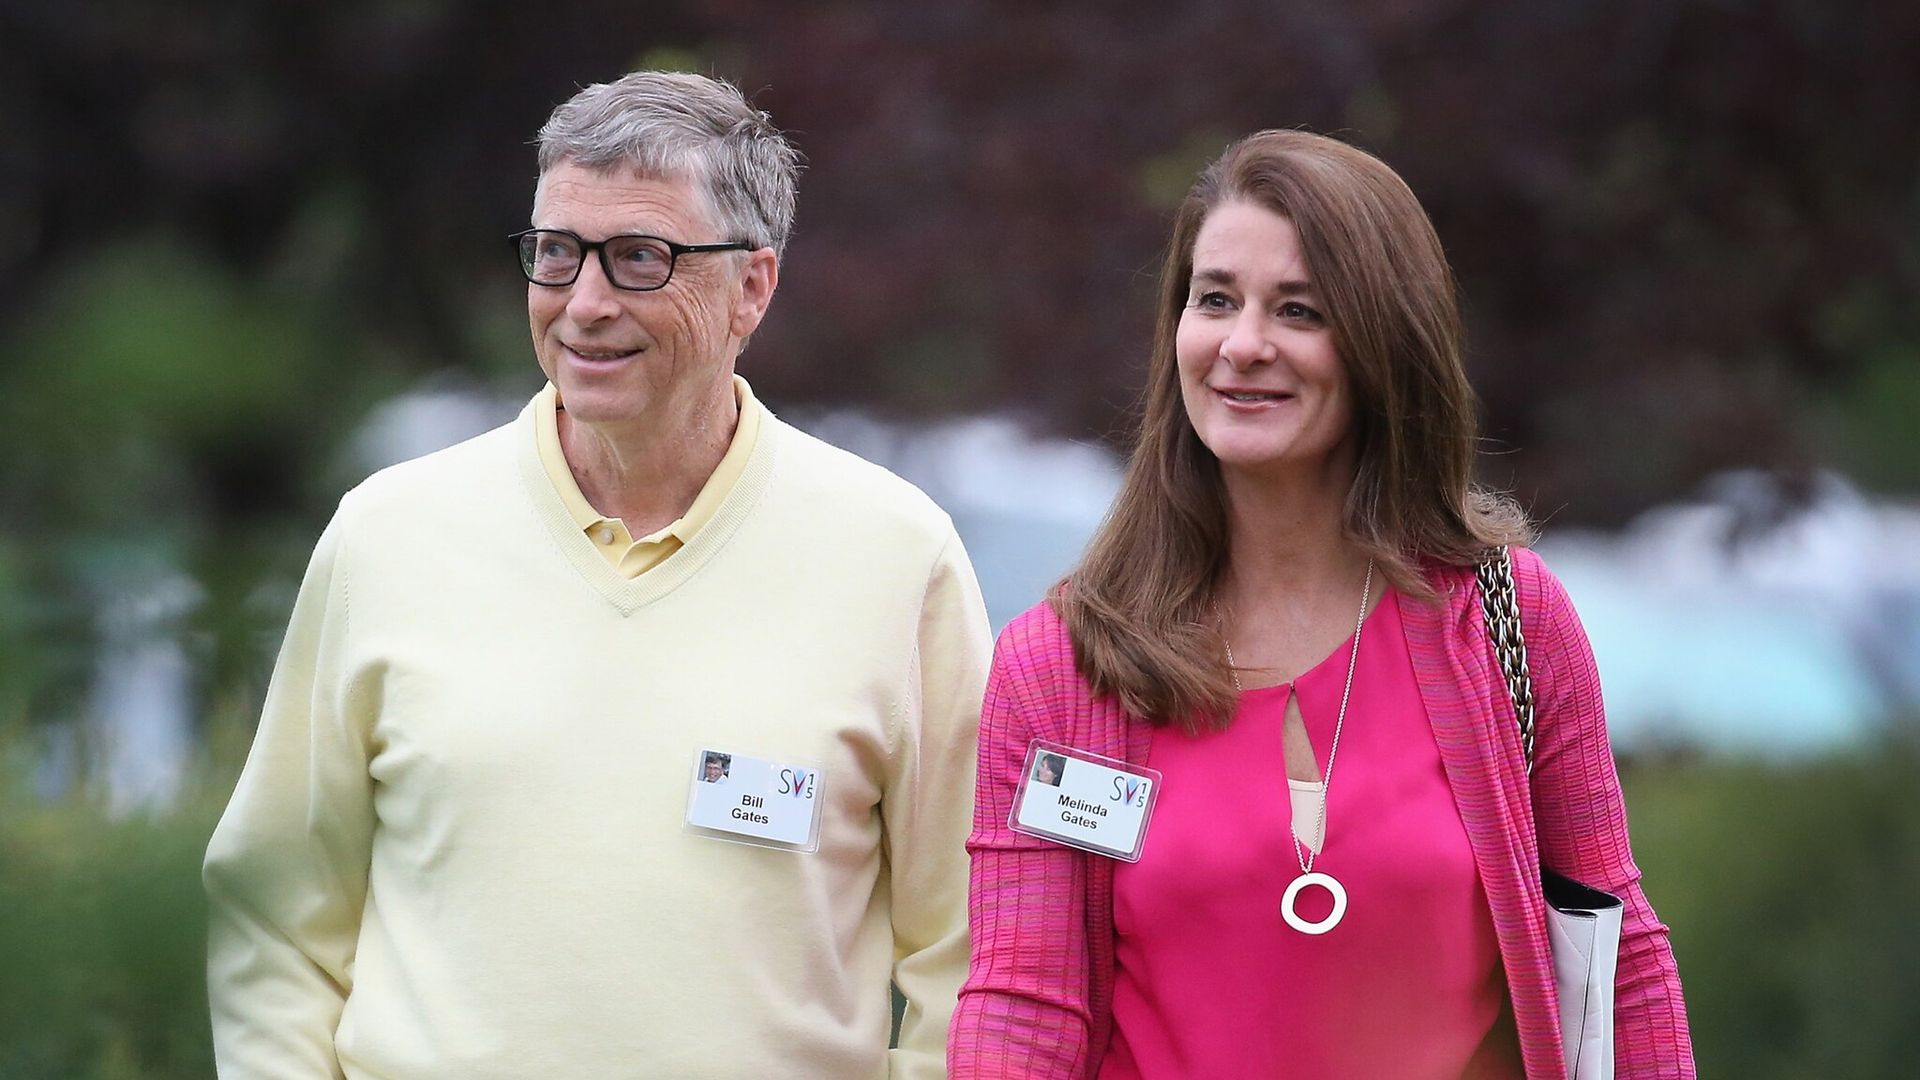 Bill Gates confiesa ser el responsable de su divorcio